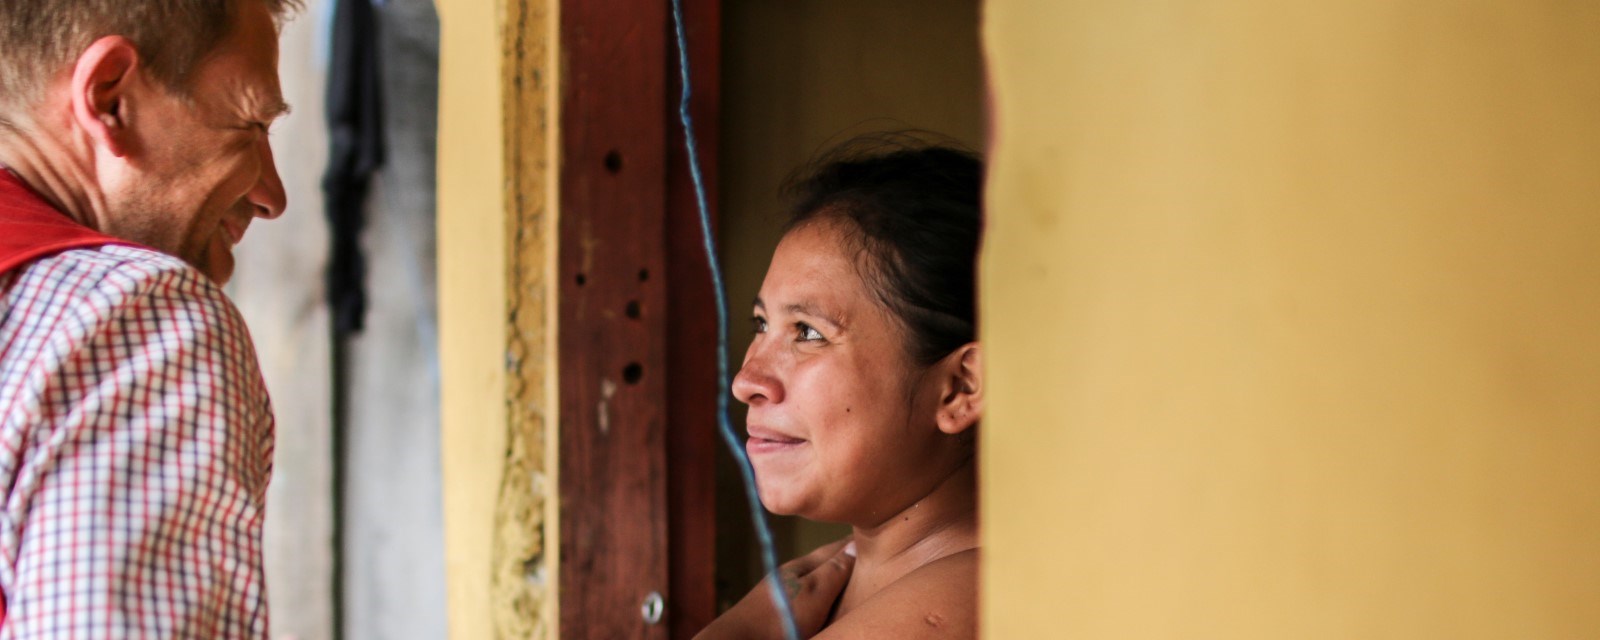 Wendy (19) bor i tegucigalpa. Hun begynte med dop og gjengkriminalitet da hun var 12 år. Gjennom søsteren sin kom hun kontakt med Røde Kors sine prosjekter. Der har hun lært selvtillit, fått helsehjelp, lært makeup og frisørteknikk og har nå kommet seg ut av dopmiskbruk og gjengkriminalitet. Foto: Thea Rabe